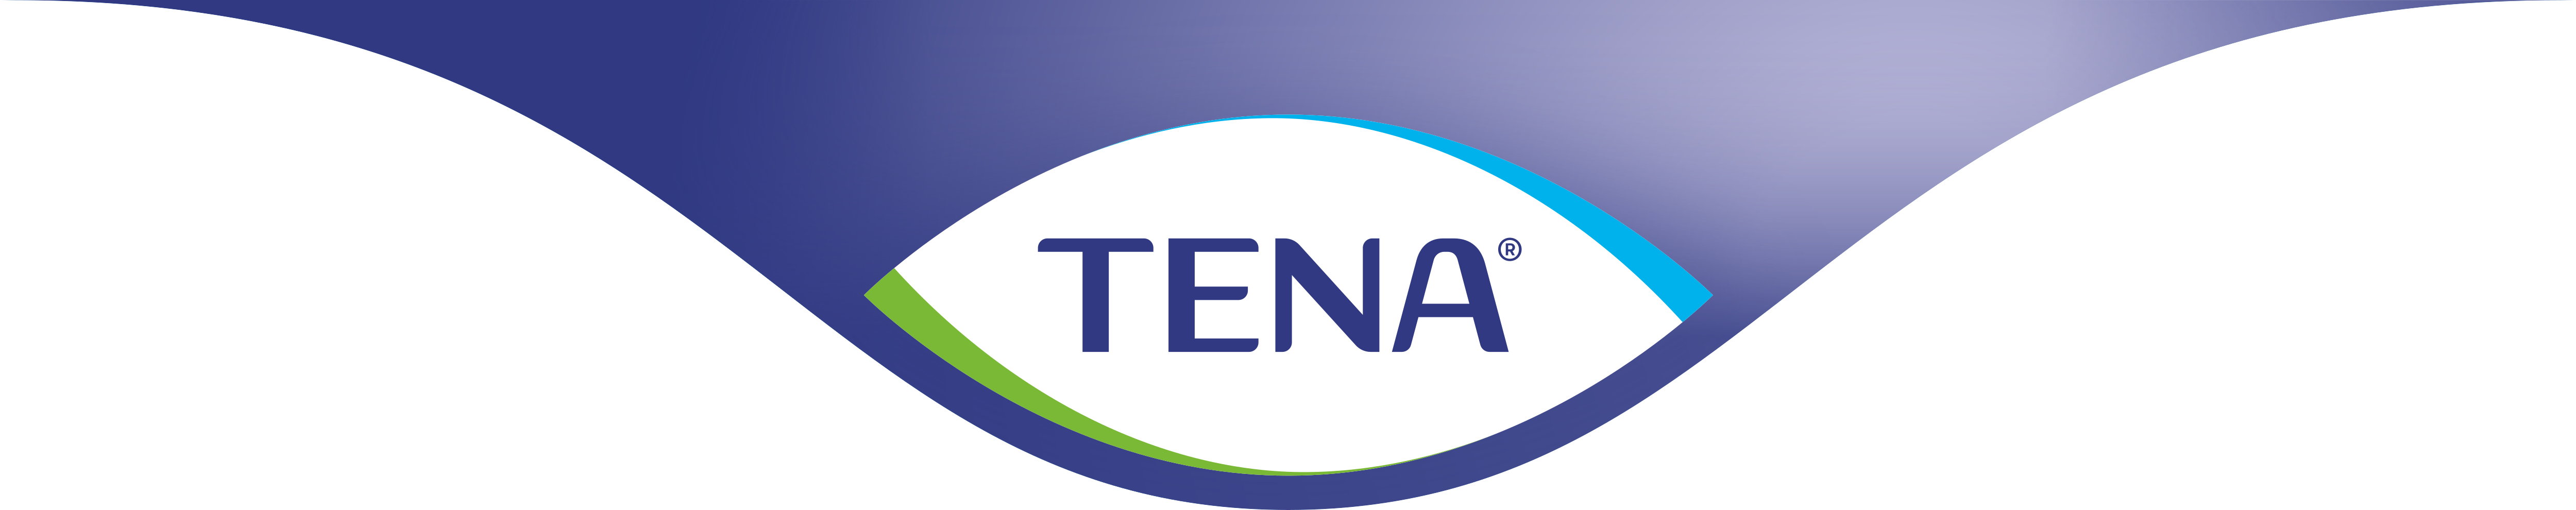 TENA – Logos Download